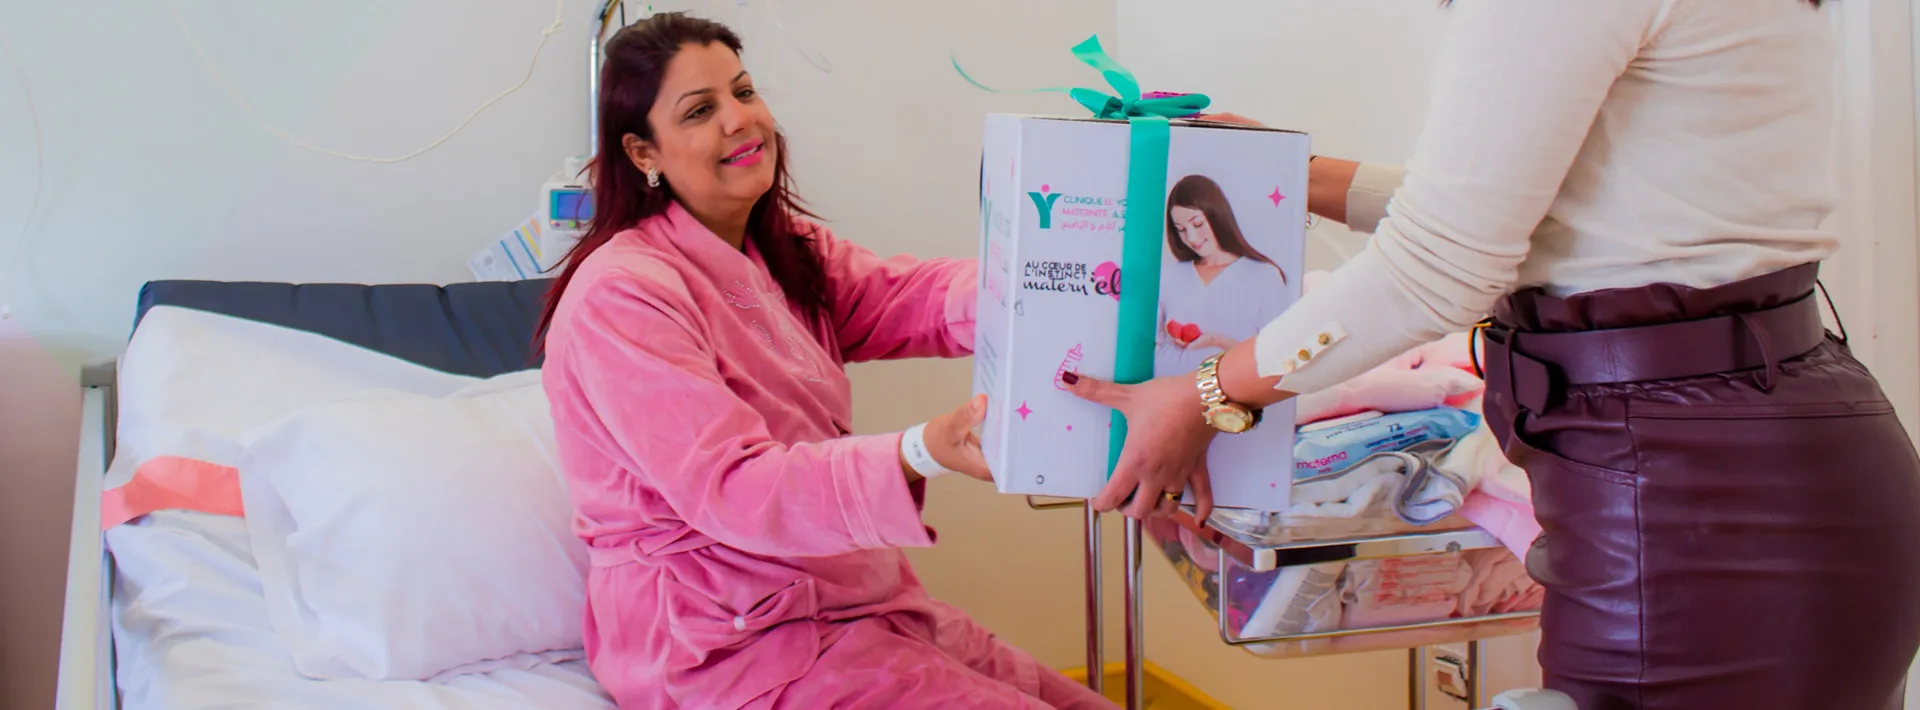 Séjour clinique el yosr maternité Sousse Tunisie